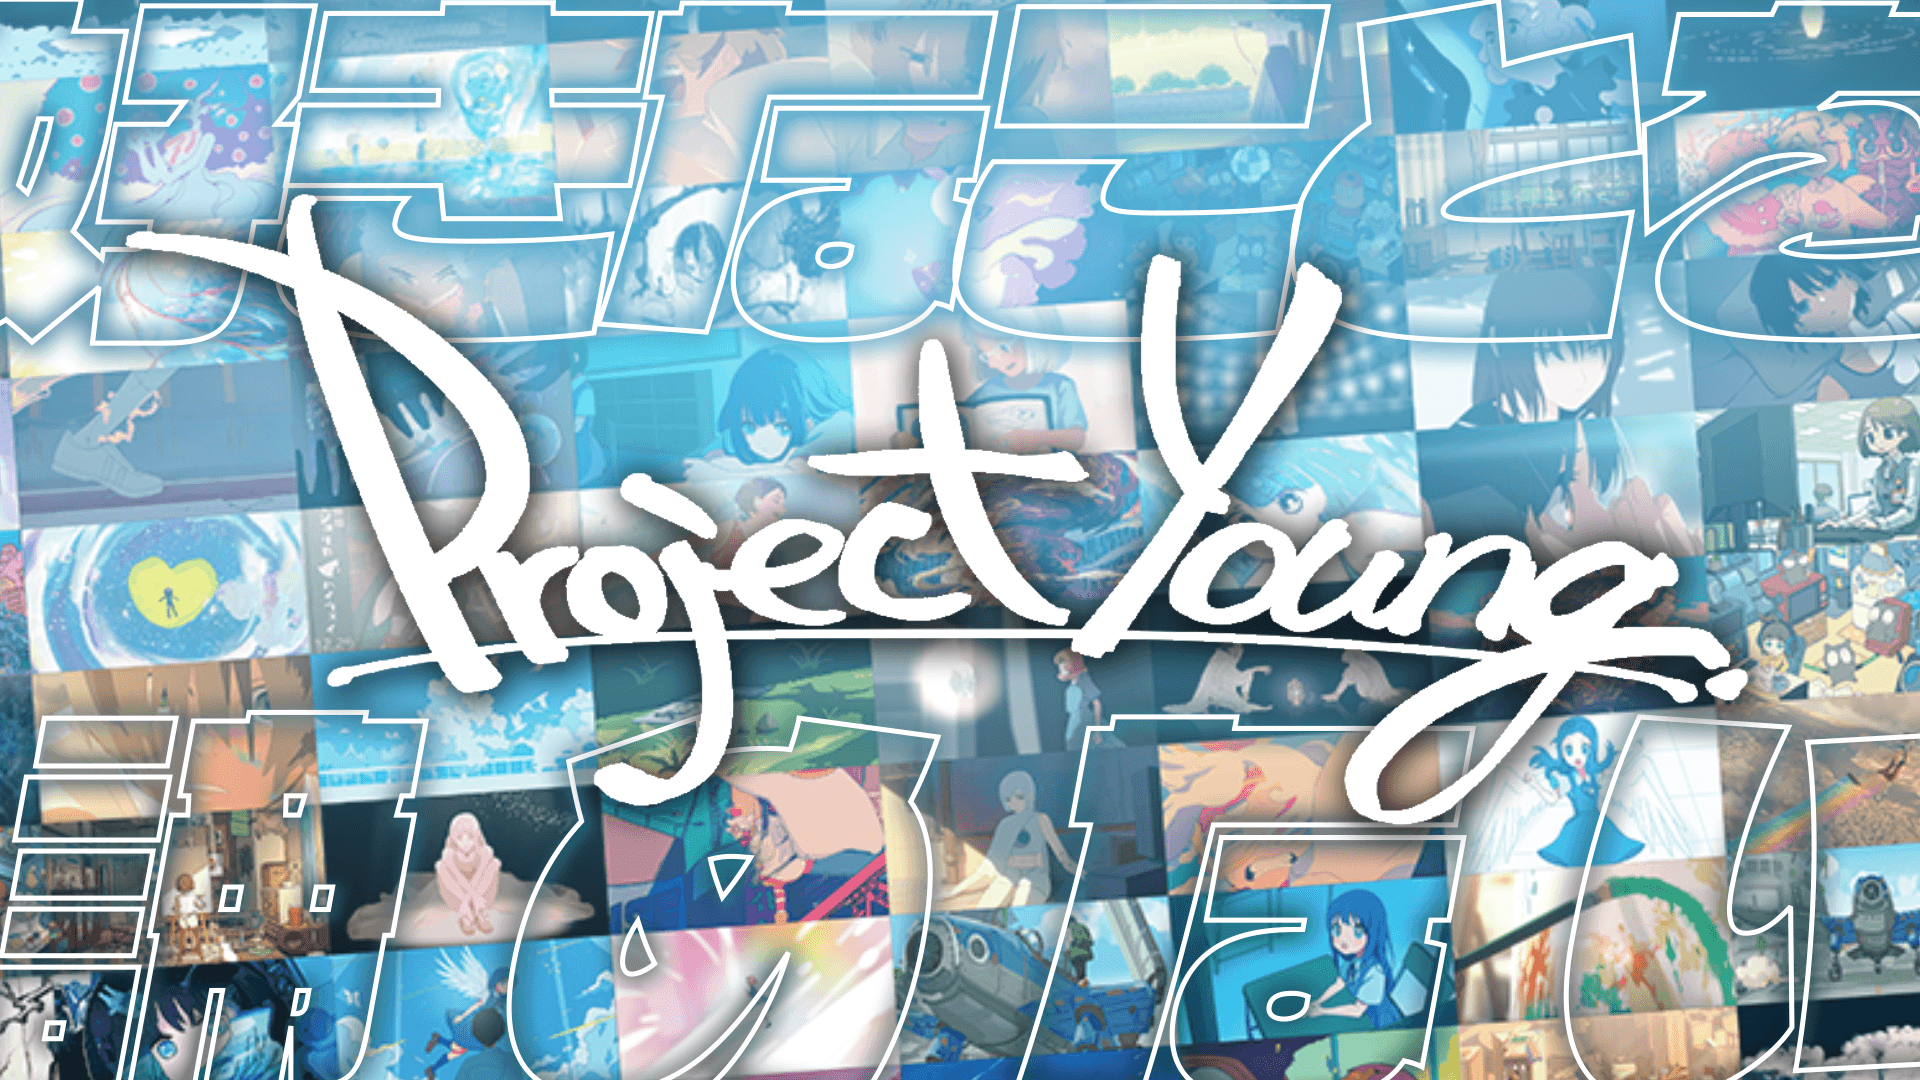 日本初・最大規模のインディーアニメの祭典「Project Young.」が開催。主催は株式会社わかさ生活、企画・制作は株式会社NOKIDのサブ画像1